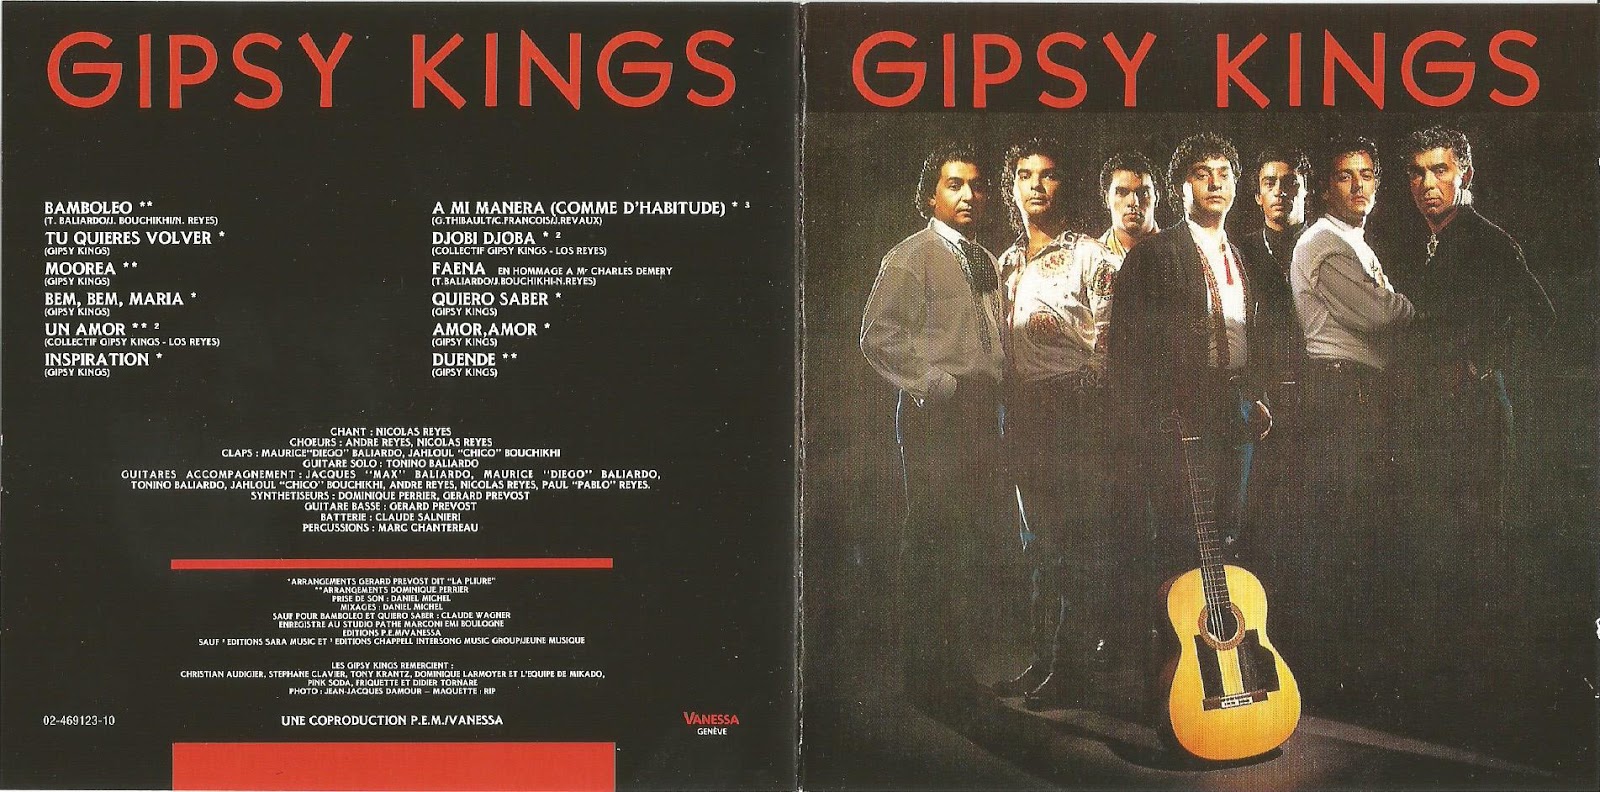 Gipsy kings песни. Gipsy Kings 1988. Gipsy Kings (1988) обложка. Gipsy Kings 1987. Gipsy Kings в Москве 2003.